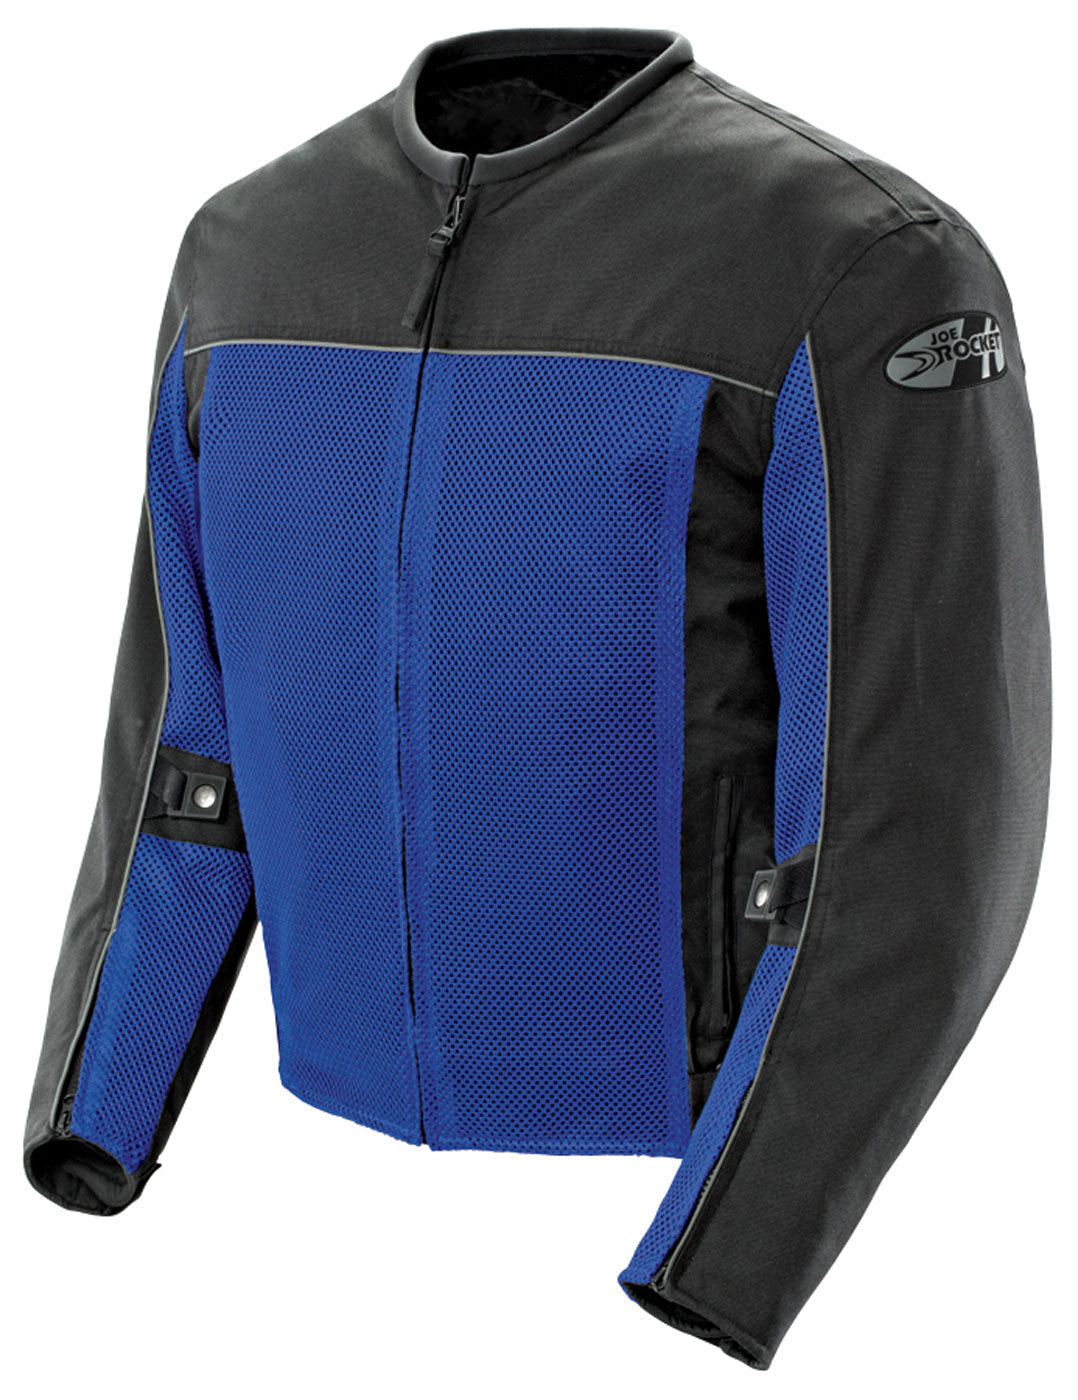 Joe Rocket Velocity Mesh Textile Jacket - Blue/Black